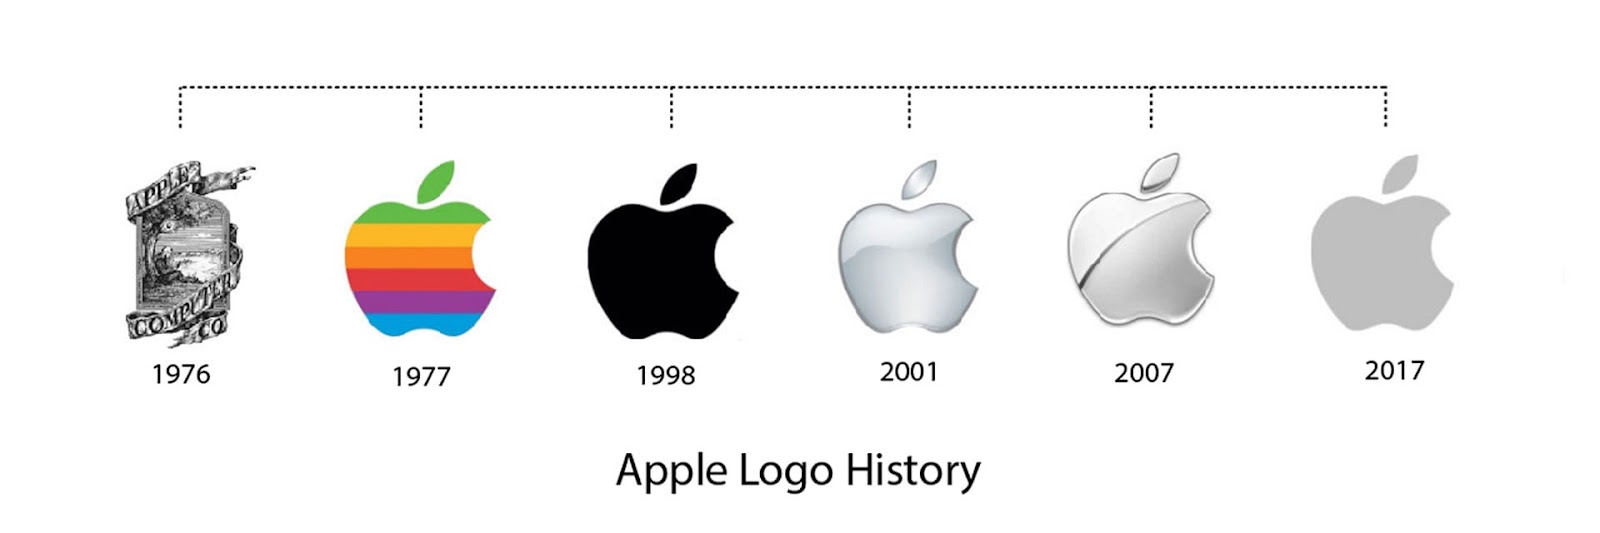 Логотипы Apple